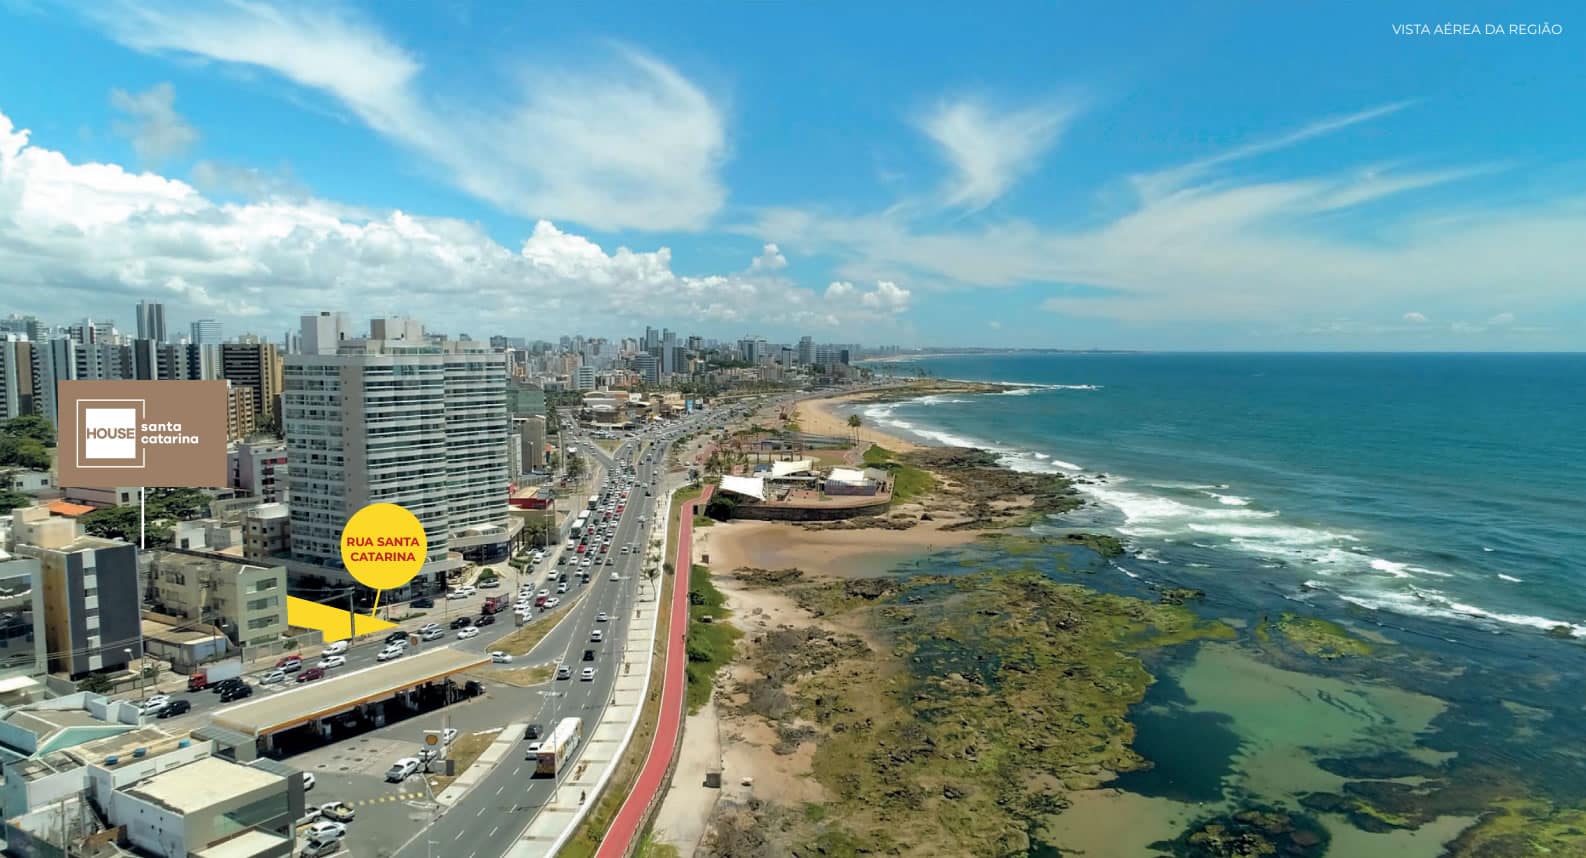 Vista aérea da região do House Santa Catarina